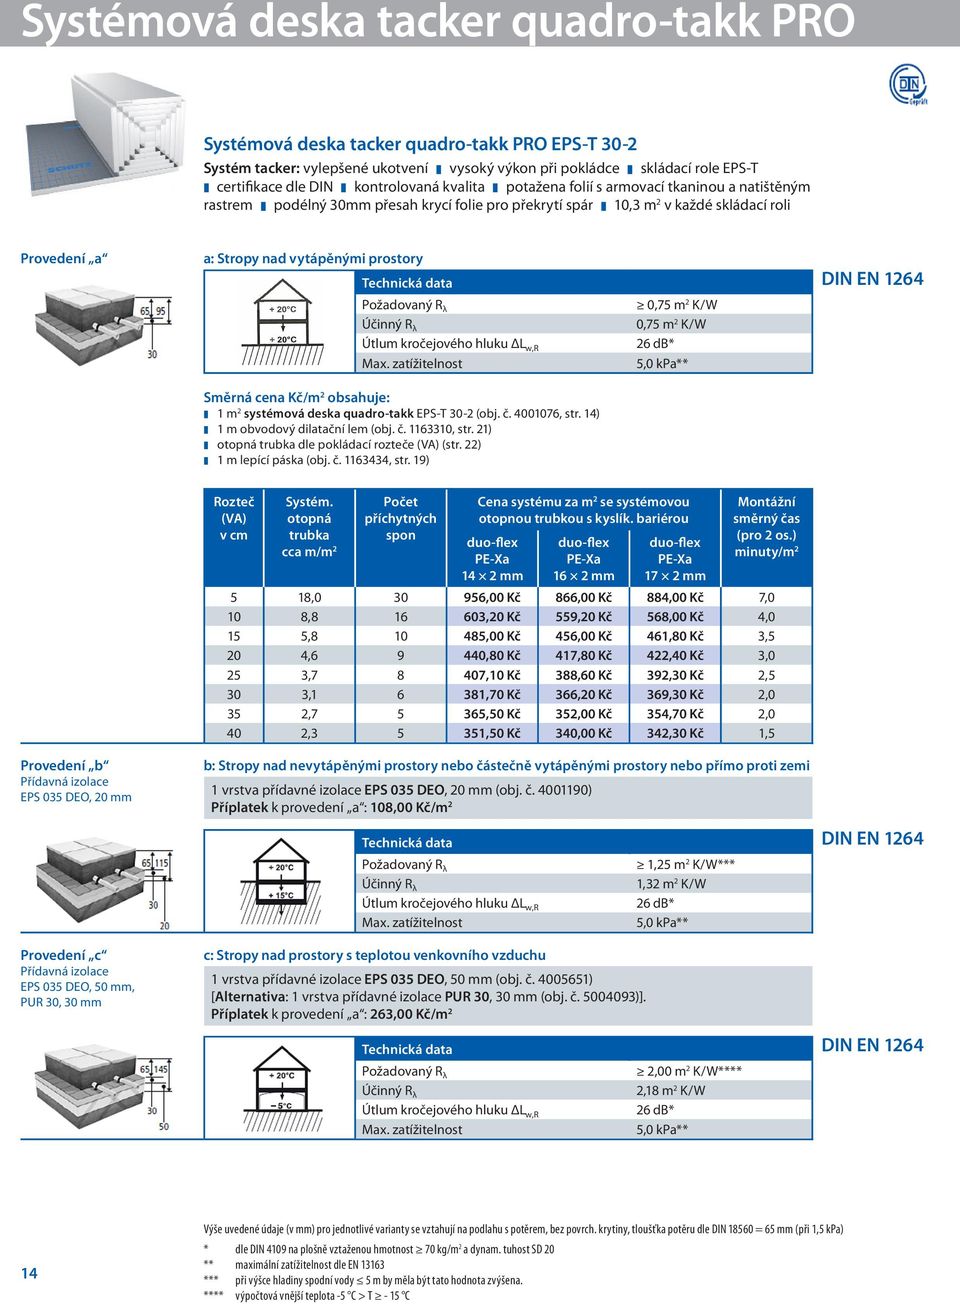 vytápěnými prostory DIN EN 1264 Požadovaný R λ Účinný R λ Max. zatížitelnost Směrná cena Kč/m 2 obsahuje: - - 1 m2 systémová deska quadro-takk EPS-T 30-2 (obj. č. 4001076, str.